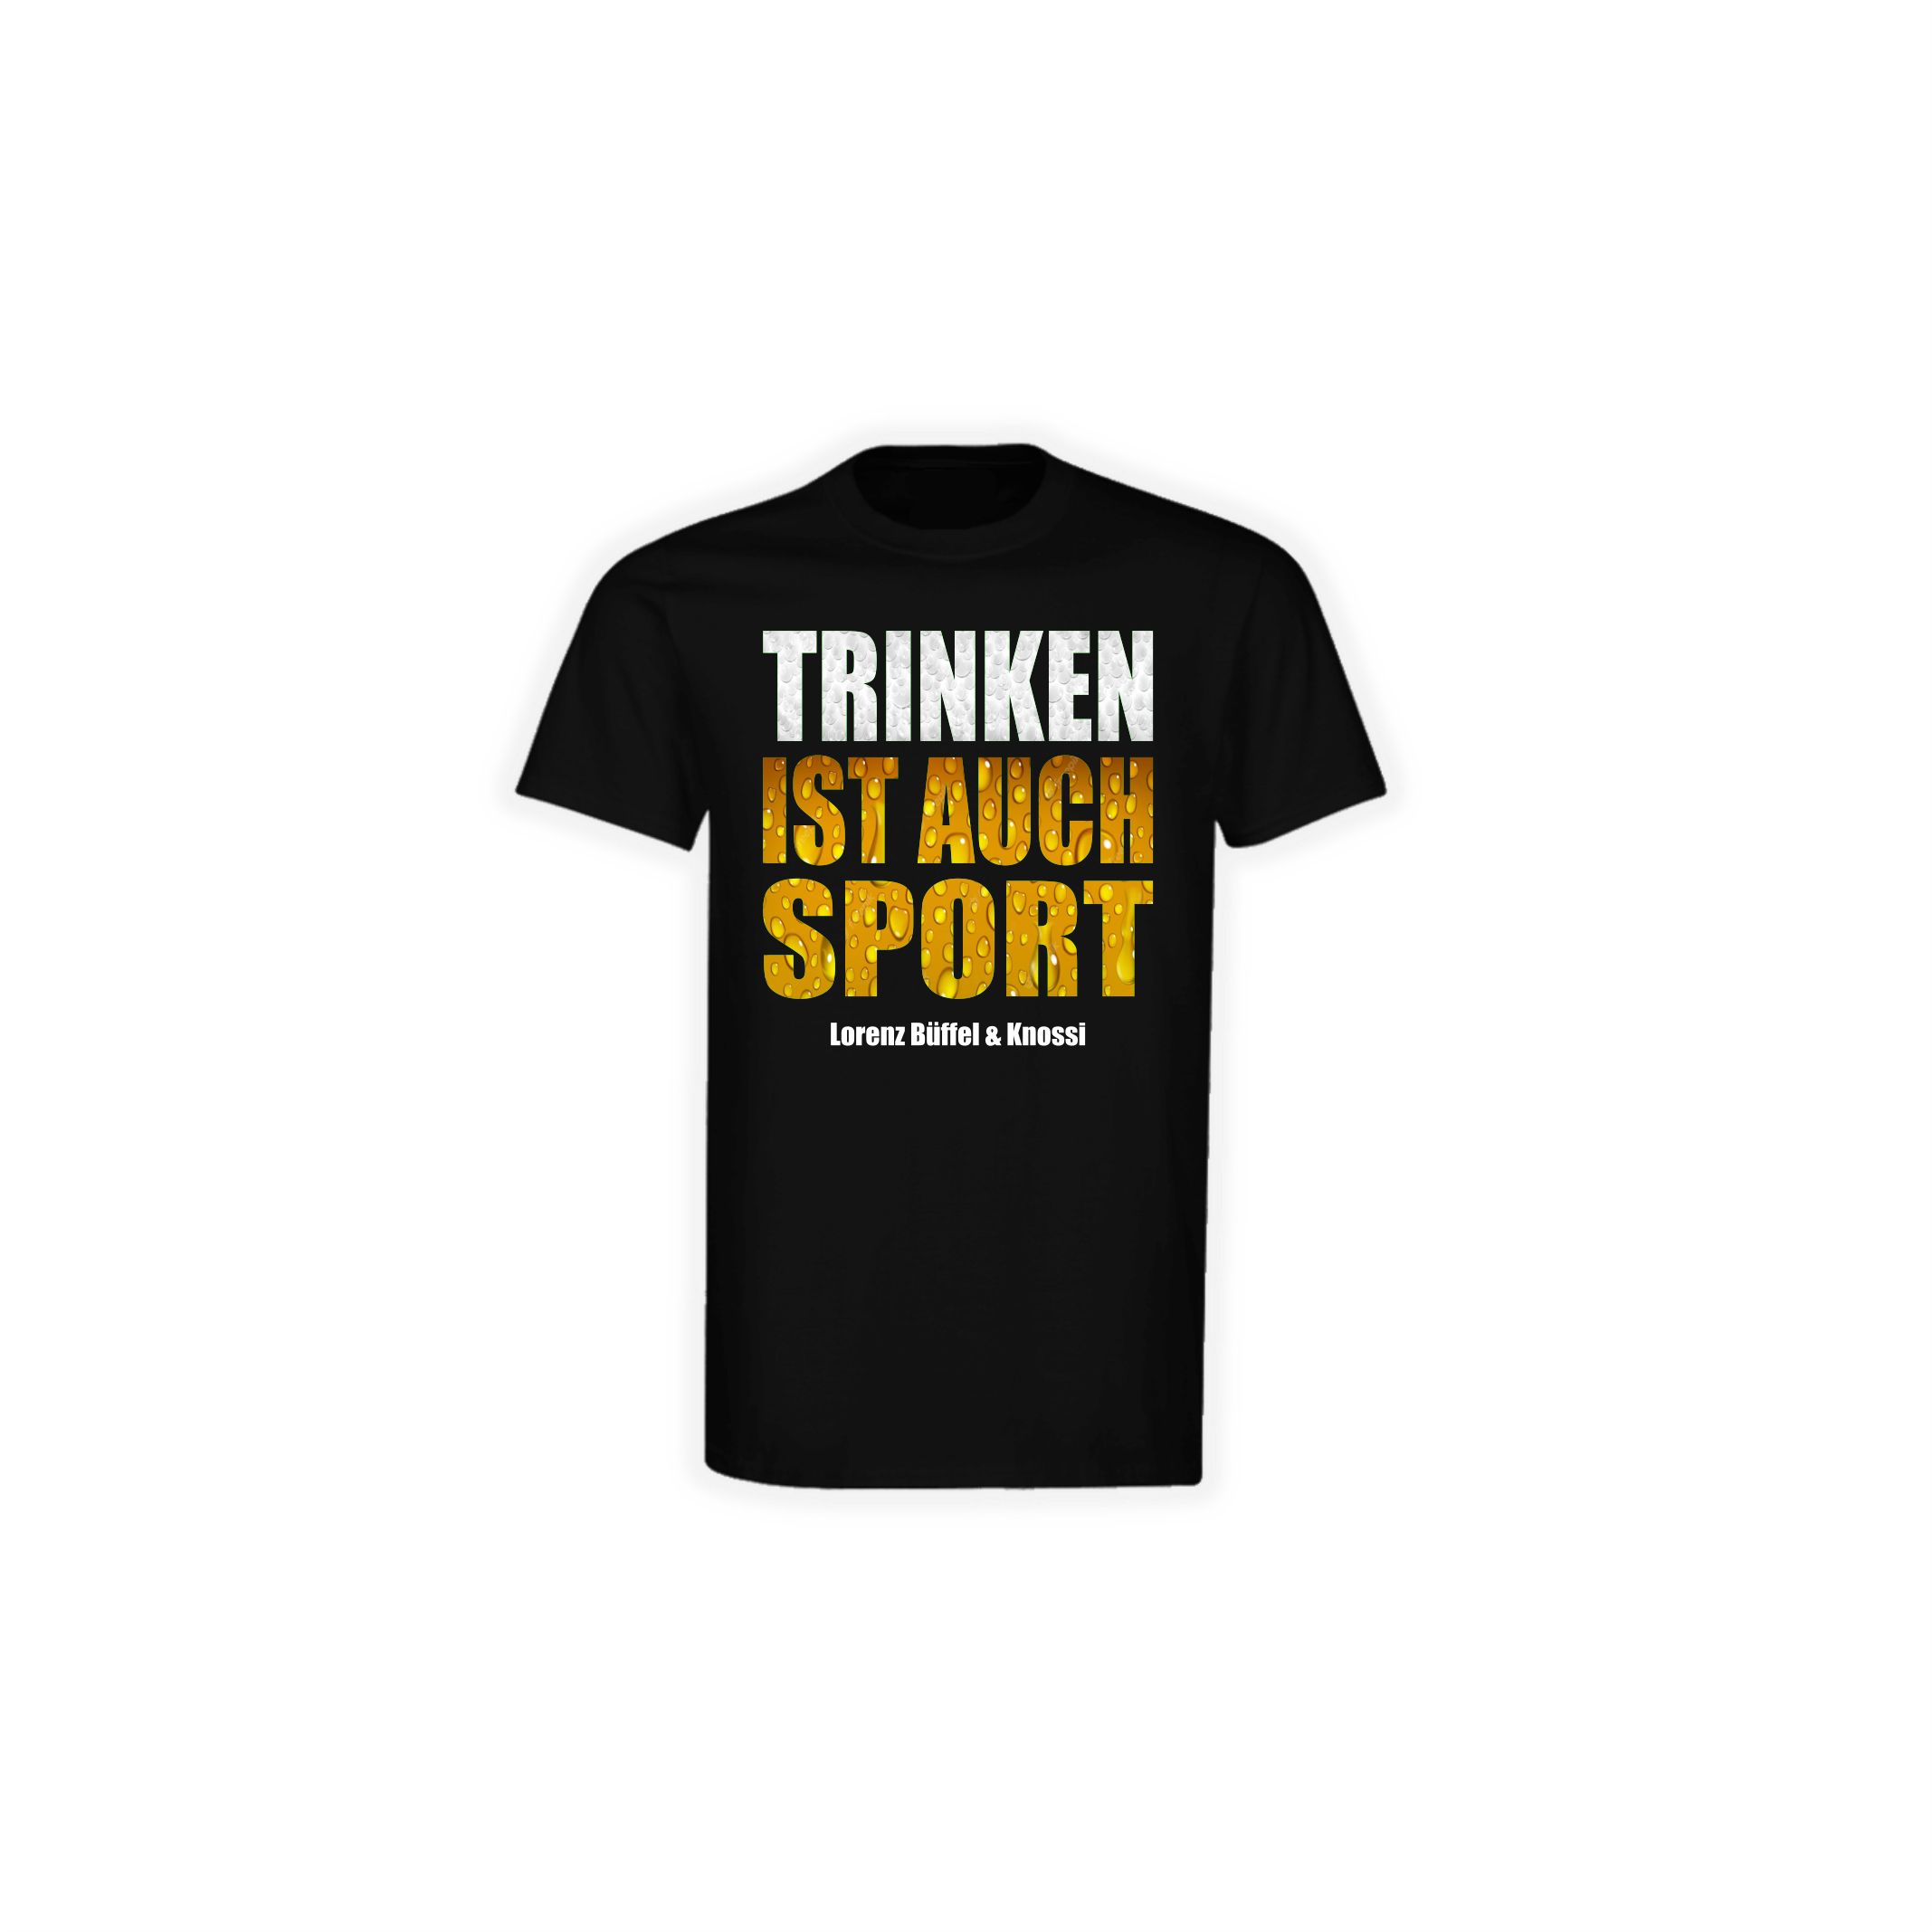 T-Shirt "TRINKEN IST AUCH SPORT" (bunt) schwarz